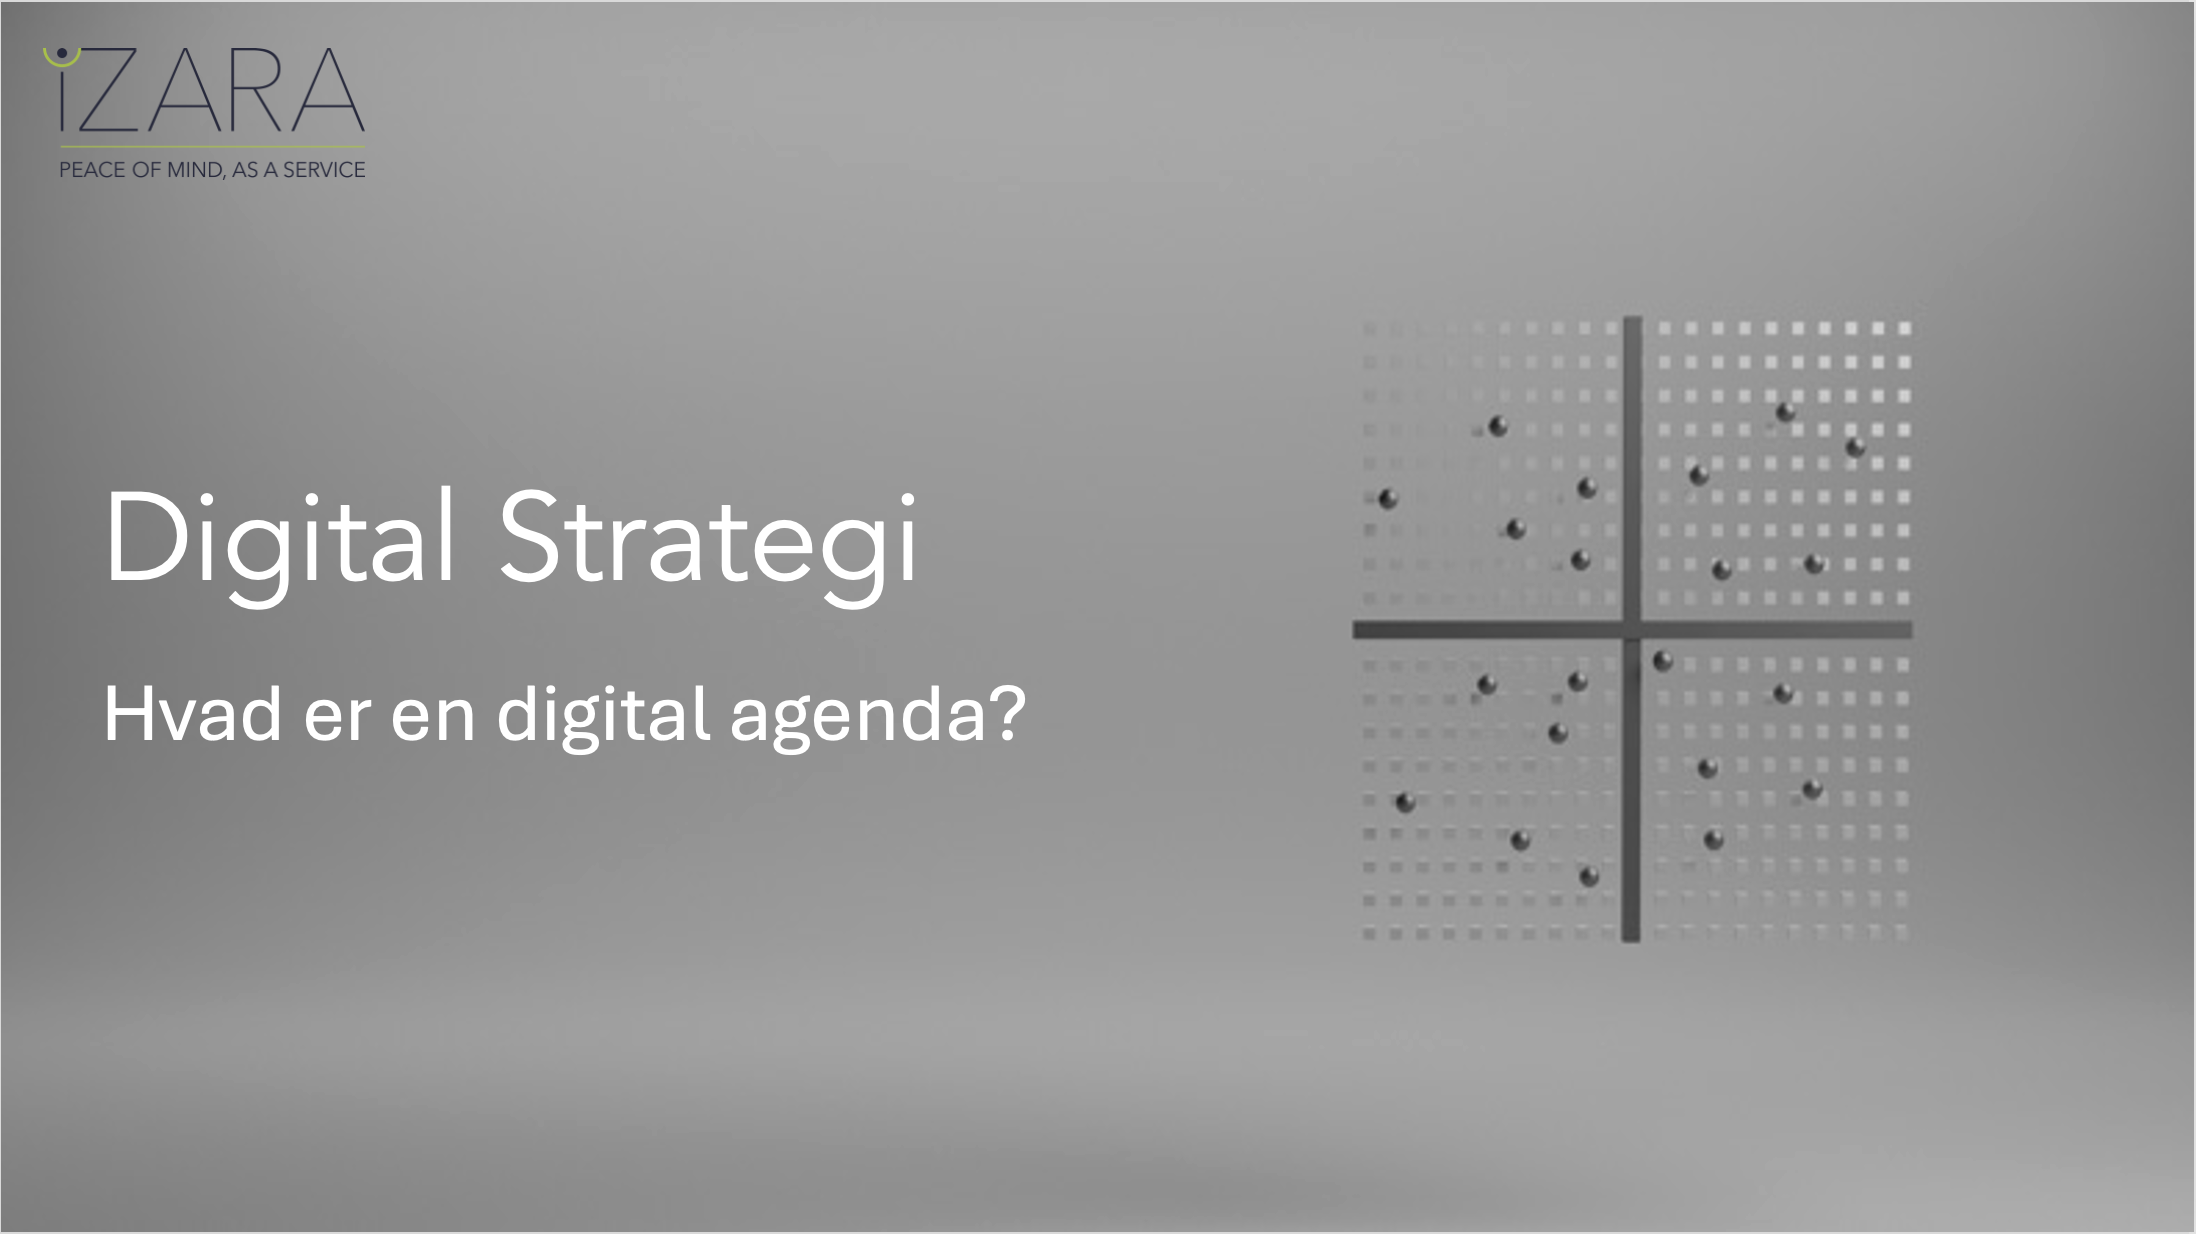 Hvad er en digital agenda?